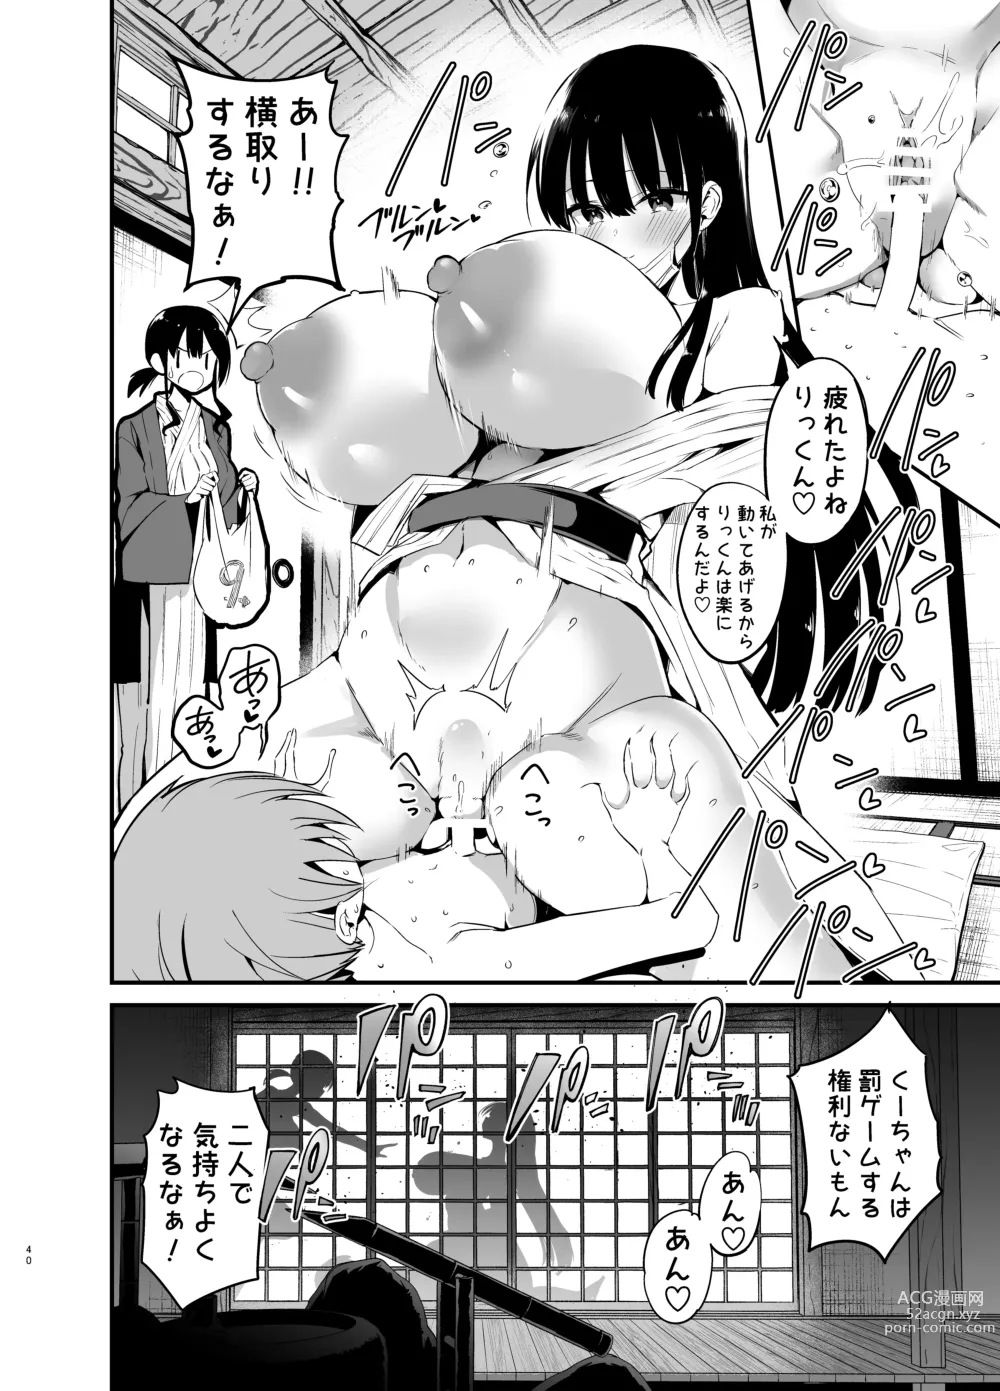 Page 40 of doujinshi Rikkun, Game Umai ne. Kakkoii ne 2